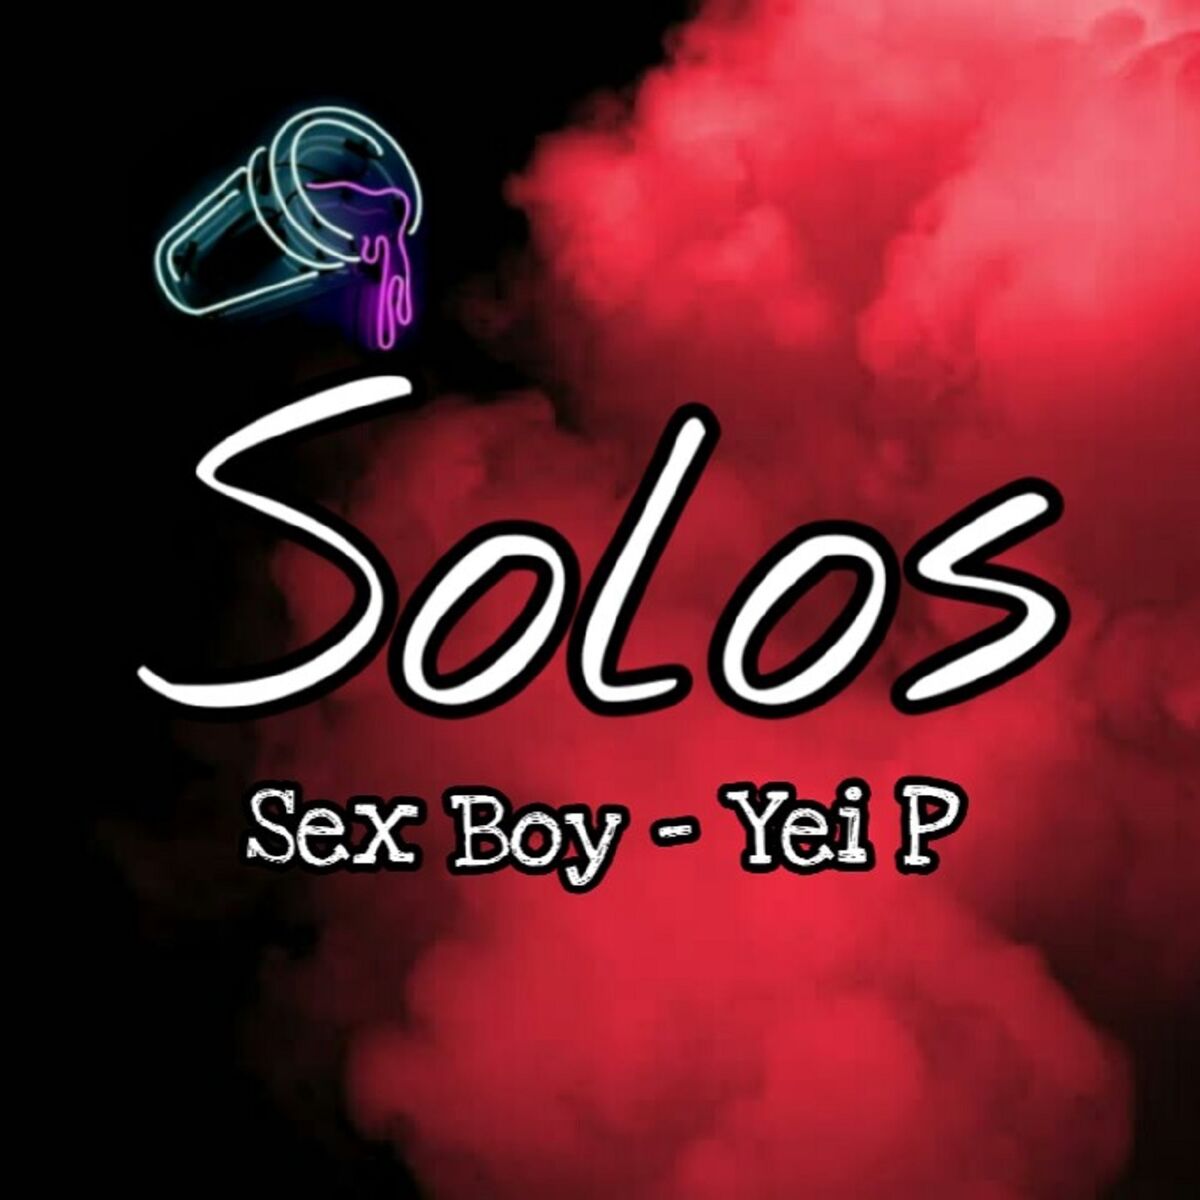 Sex Boy альбомы песни плейлисты Слушайте на Deezer 